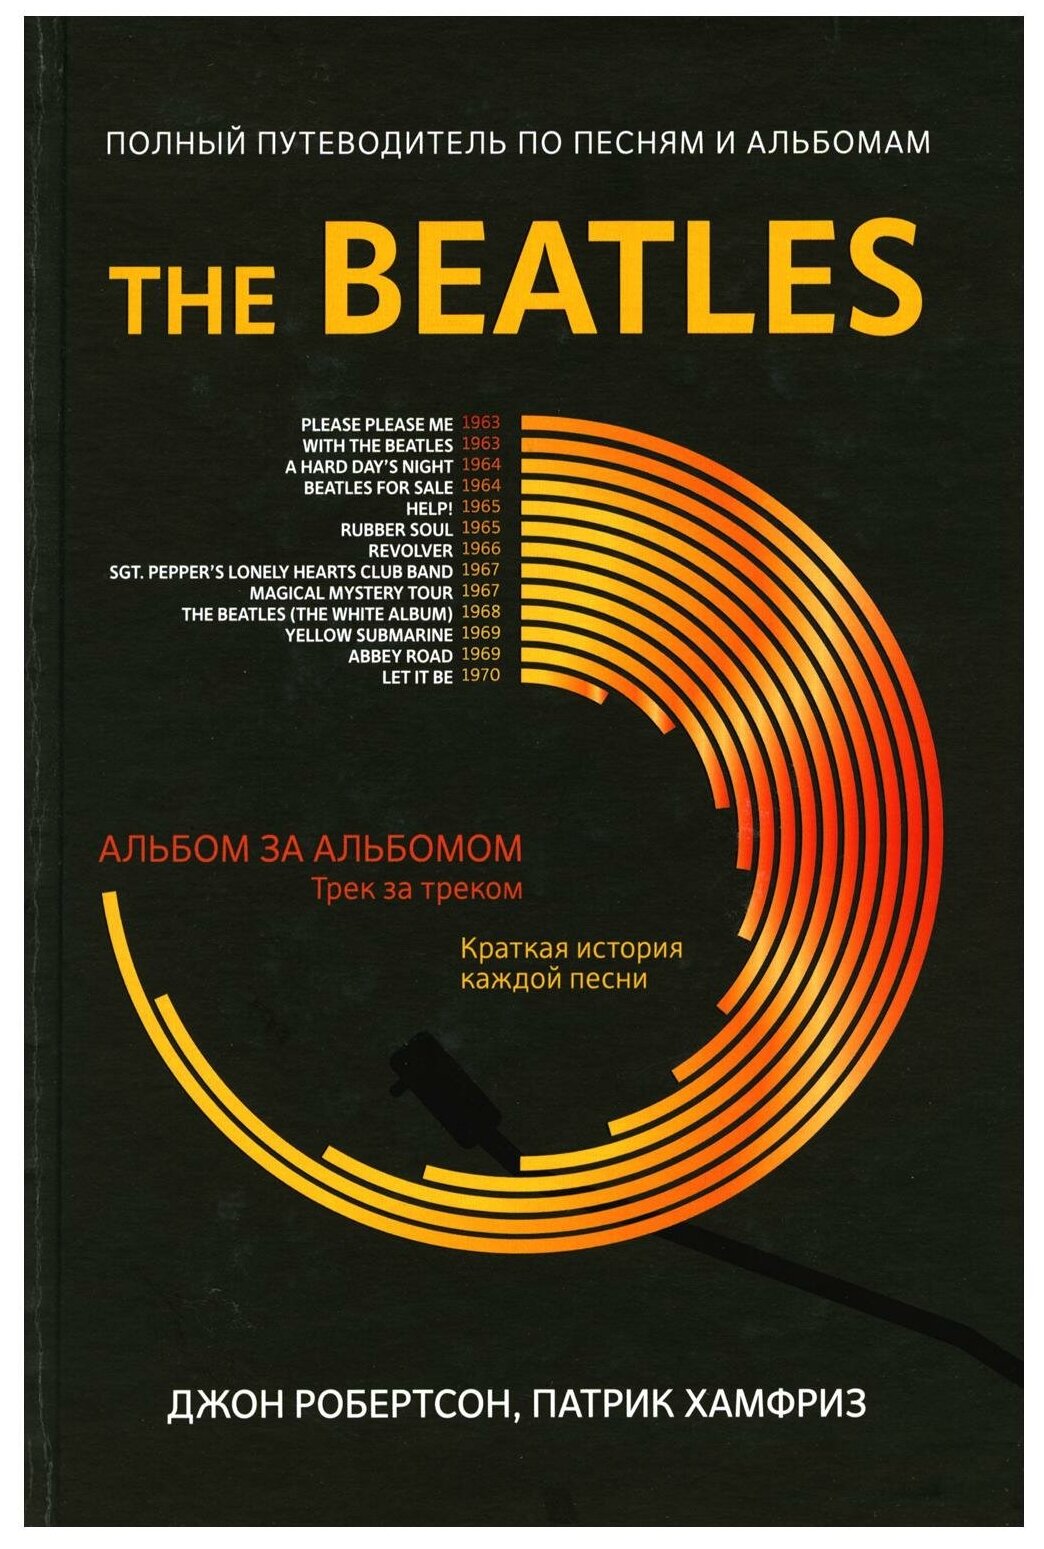 The Beatles полный путеводитель по песням и альбомам Краткая история каждой песни Книга Робертсон Д 16+